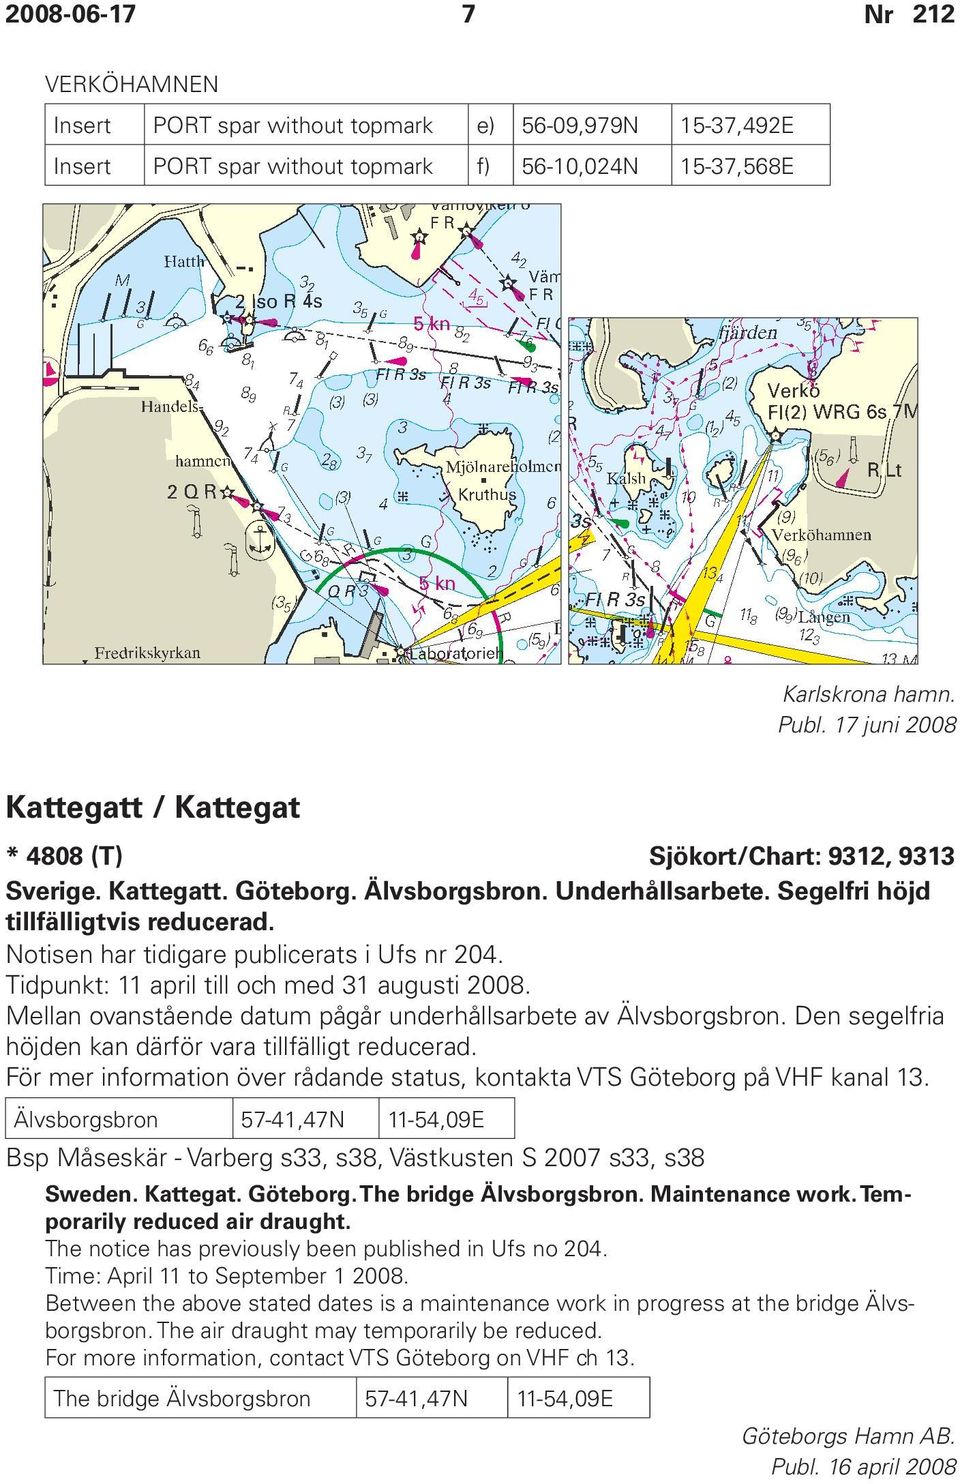 Notisen har tidigare publicerats i Ufs nr 204. Tidpunkt: 11 april till och med 31 augusti 2008. Mellan ovanstående datum pågår underhållsarbete av Älvsborgsbron.